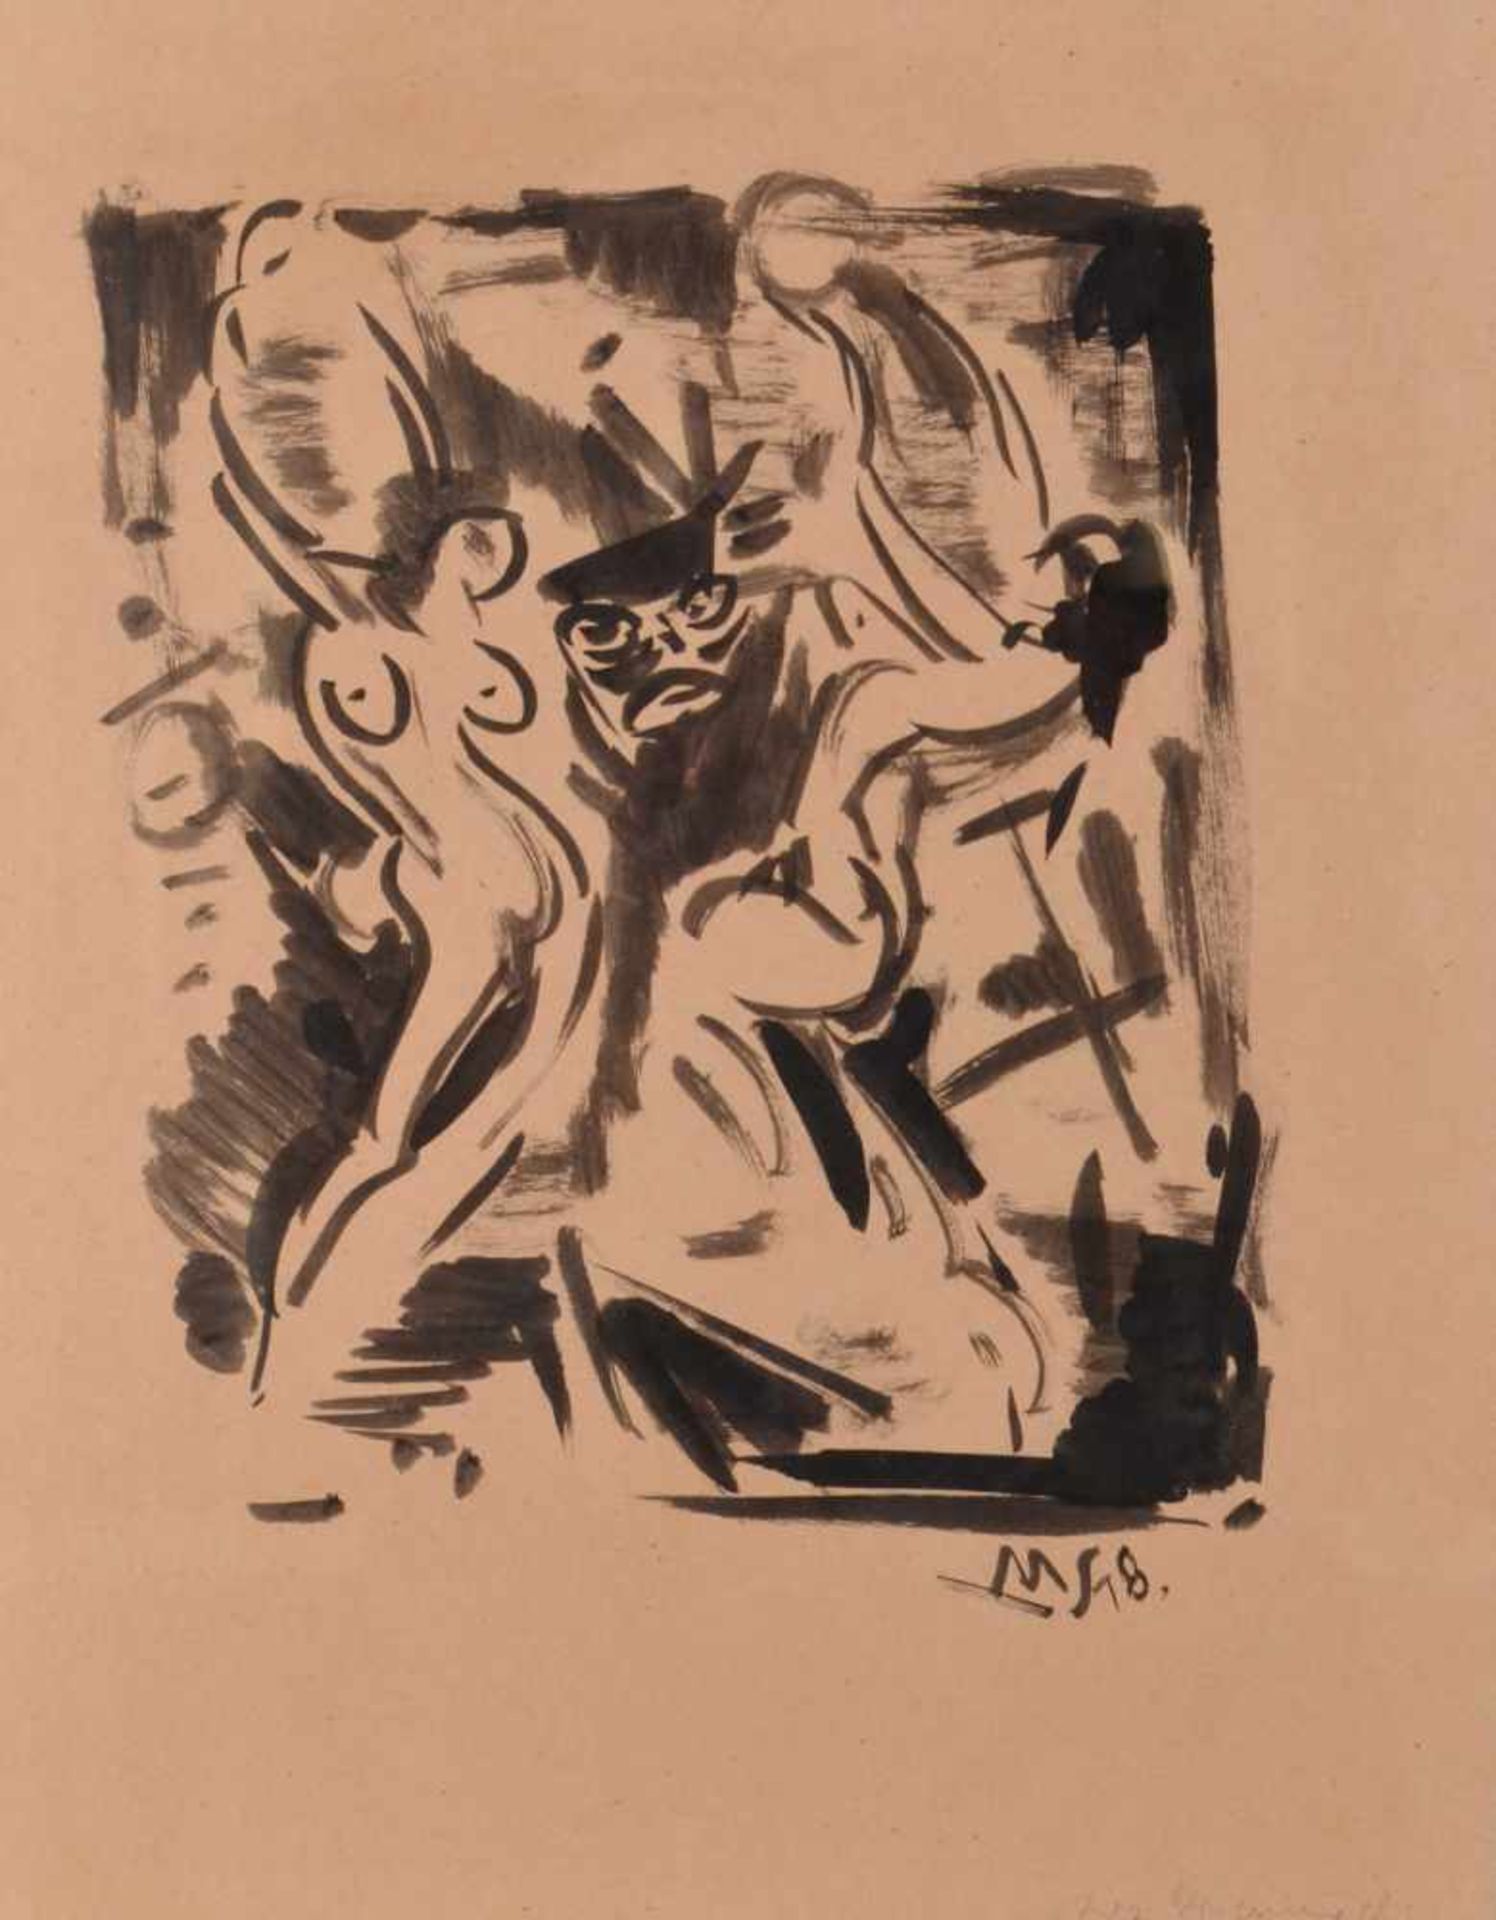 Max SCHWIMMER (1895-1960)"Der Tanz"Tuschezeichnung, 31,5 cm x 24,7 cm,rechts unten monogrammiert und